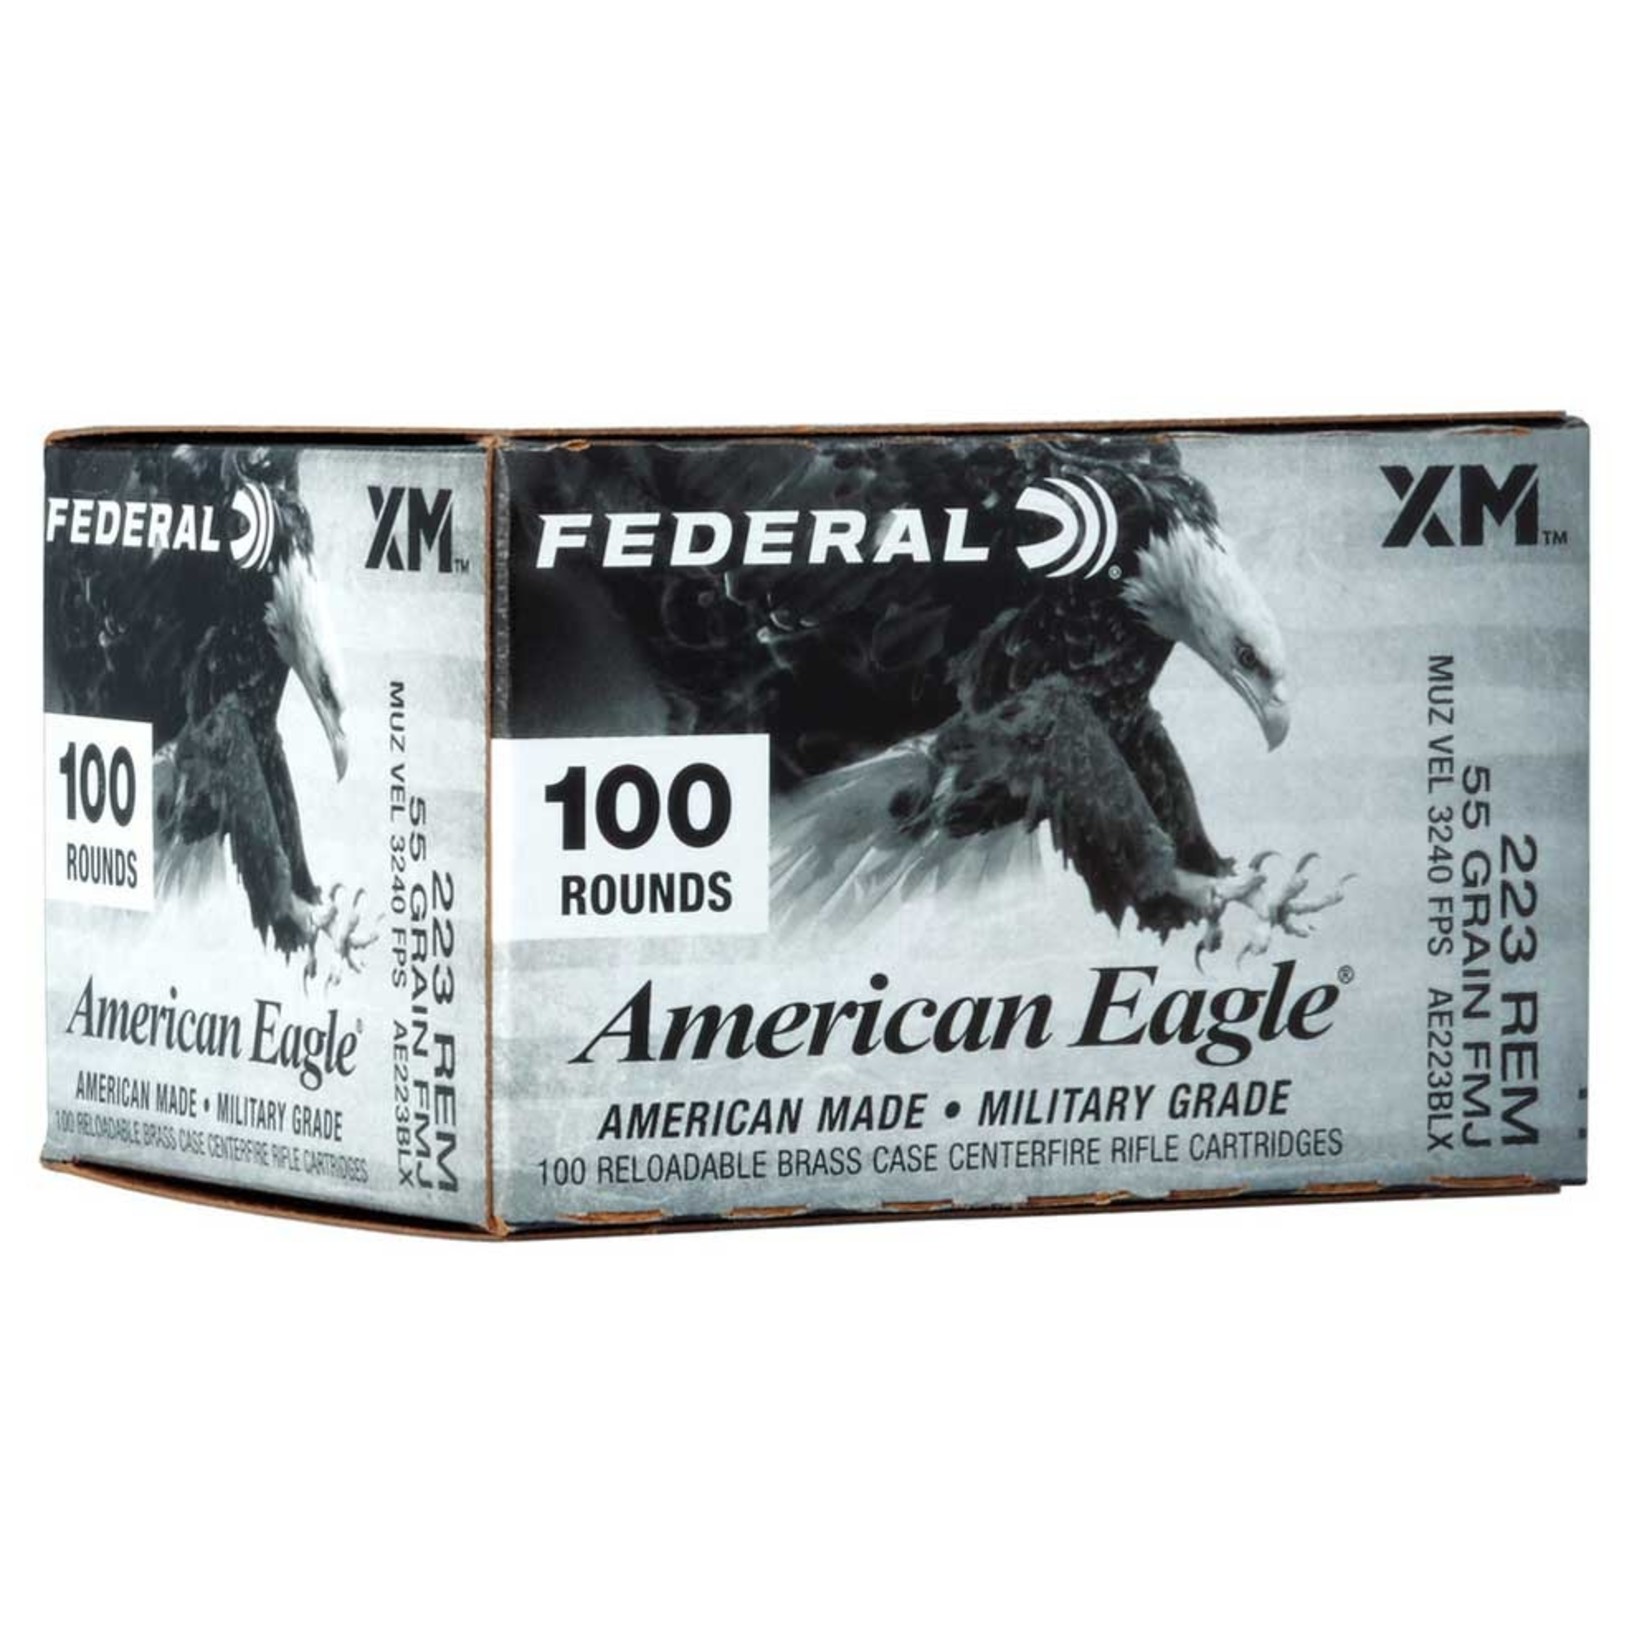 Federal Federal 223 REM 55GR FMJ x 100 Rnd Box